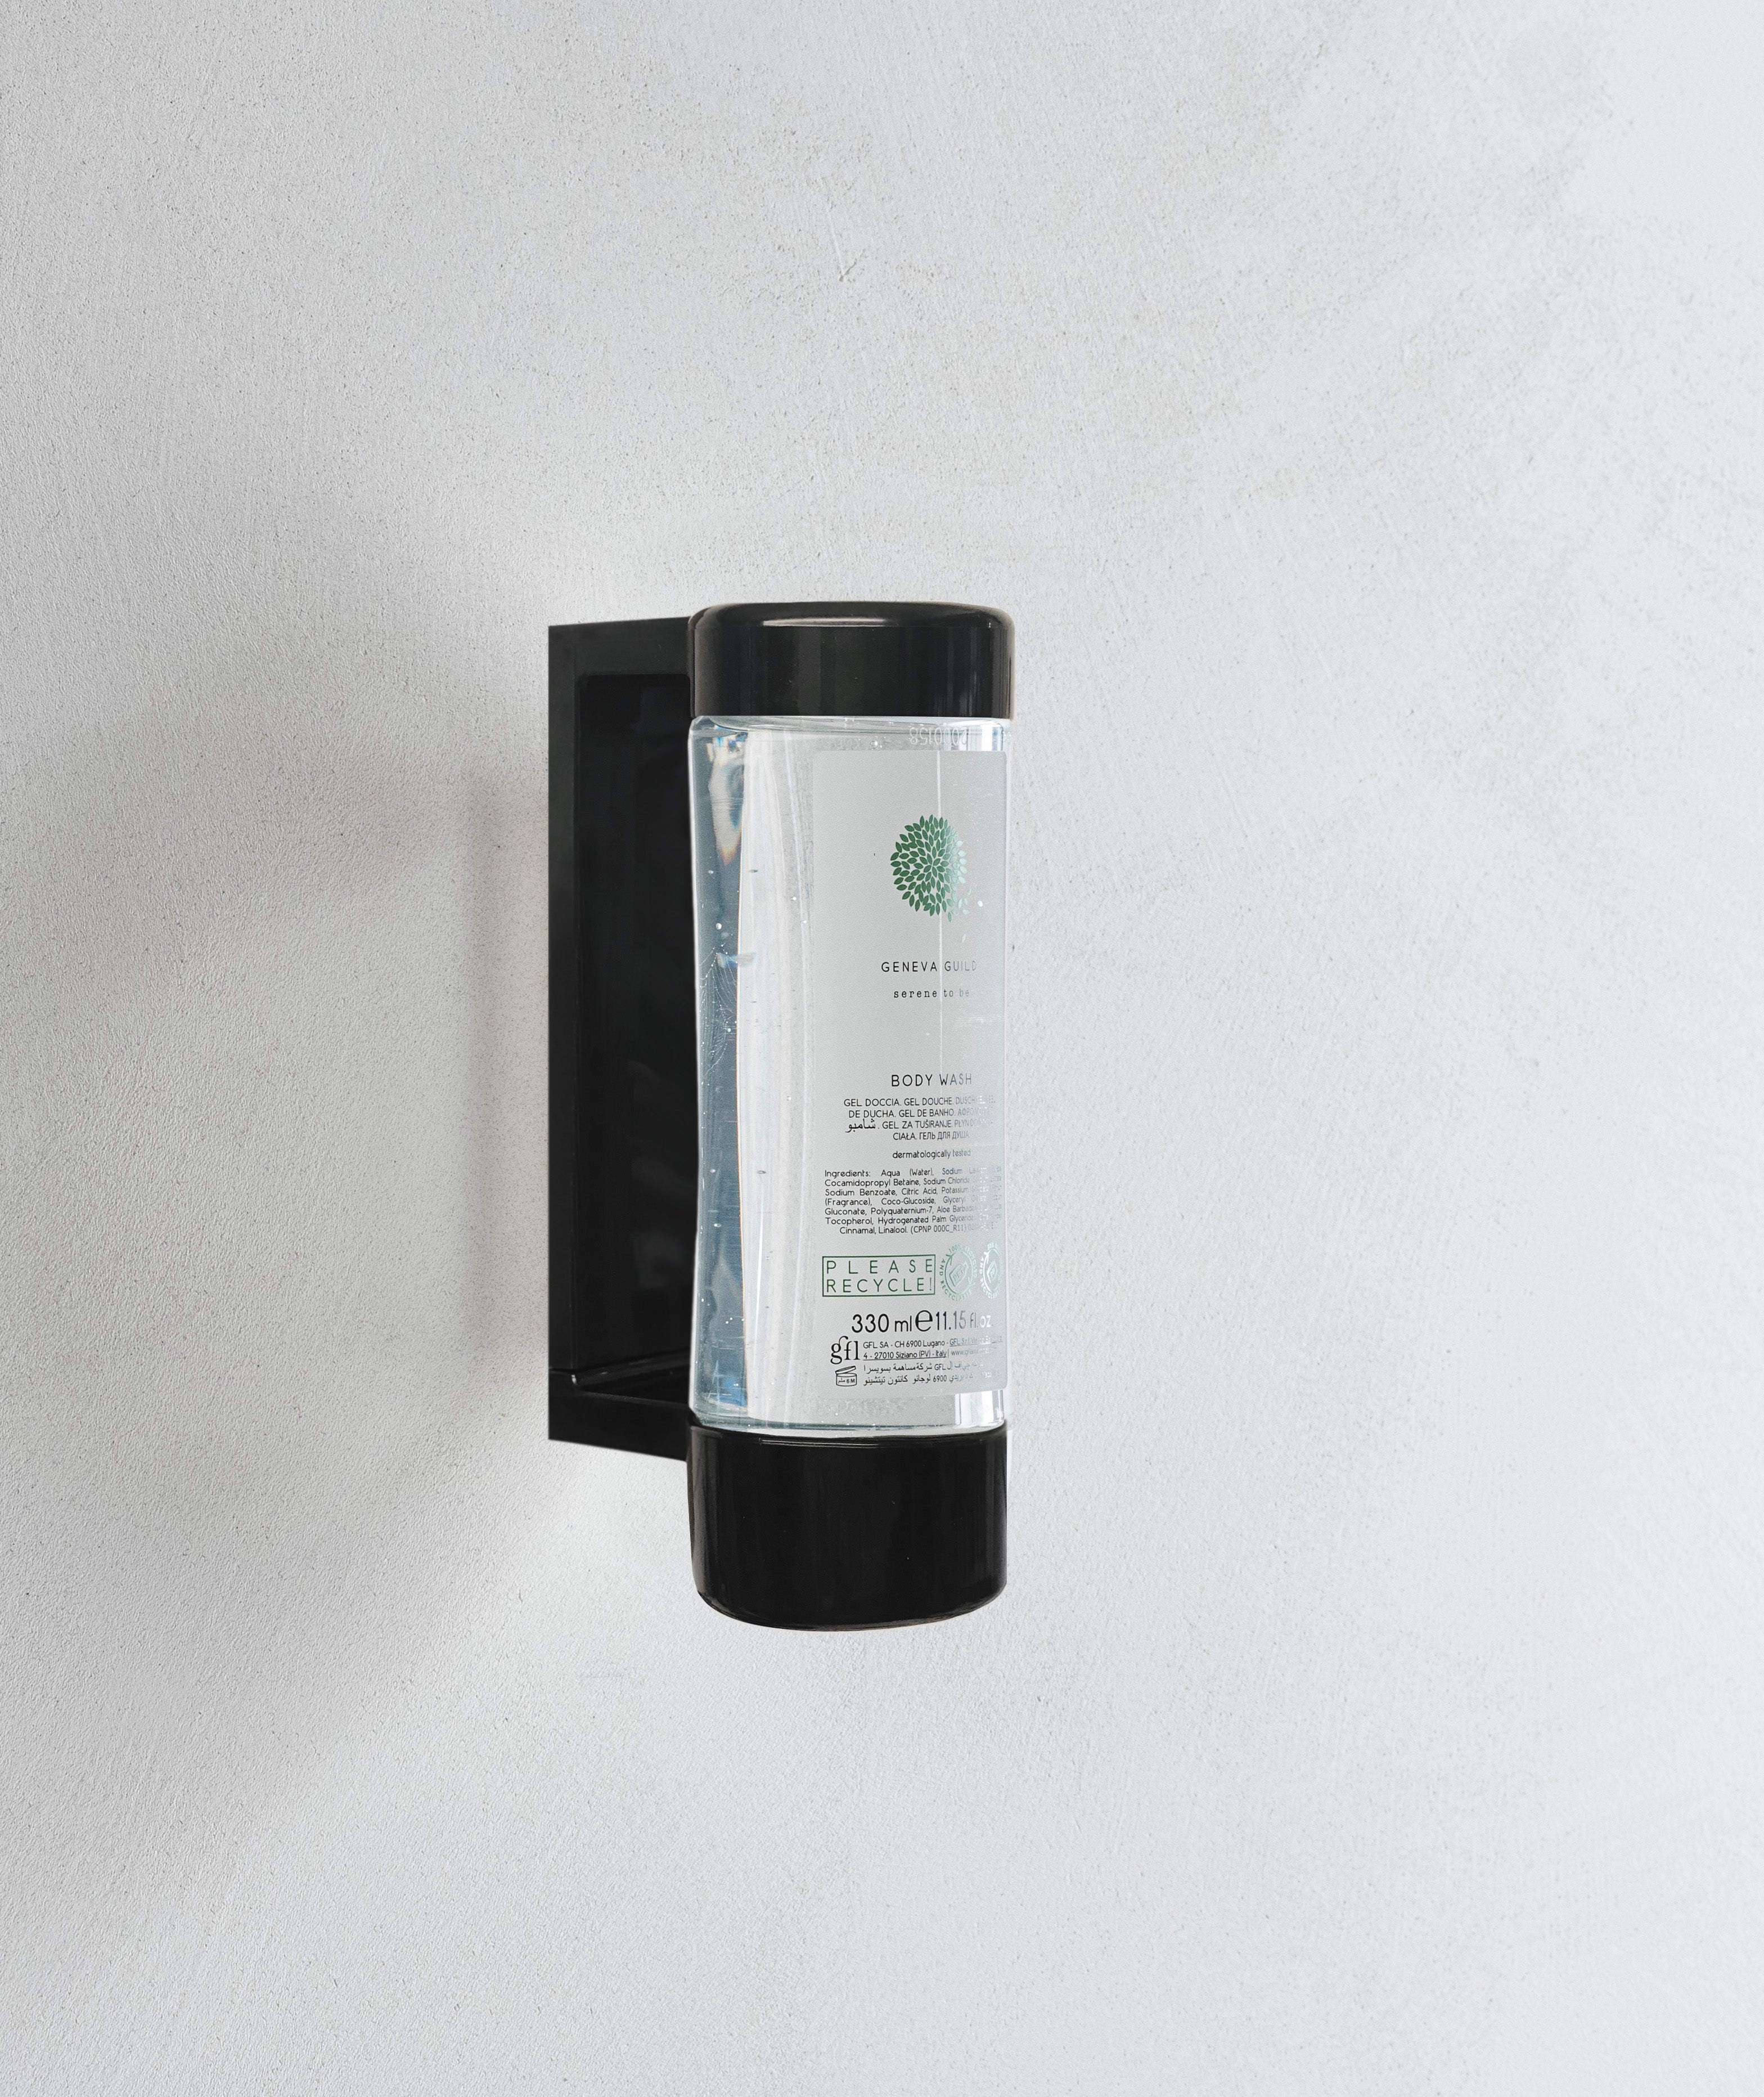 Geneva Guild Body Wash Cartridge For Dispenser (330 ml)